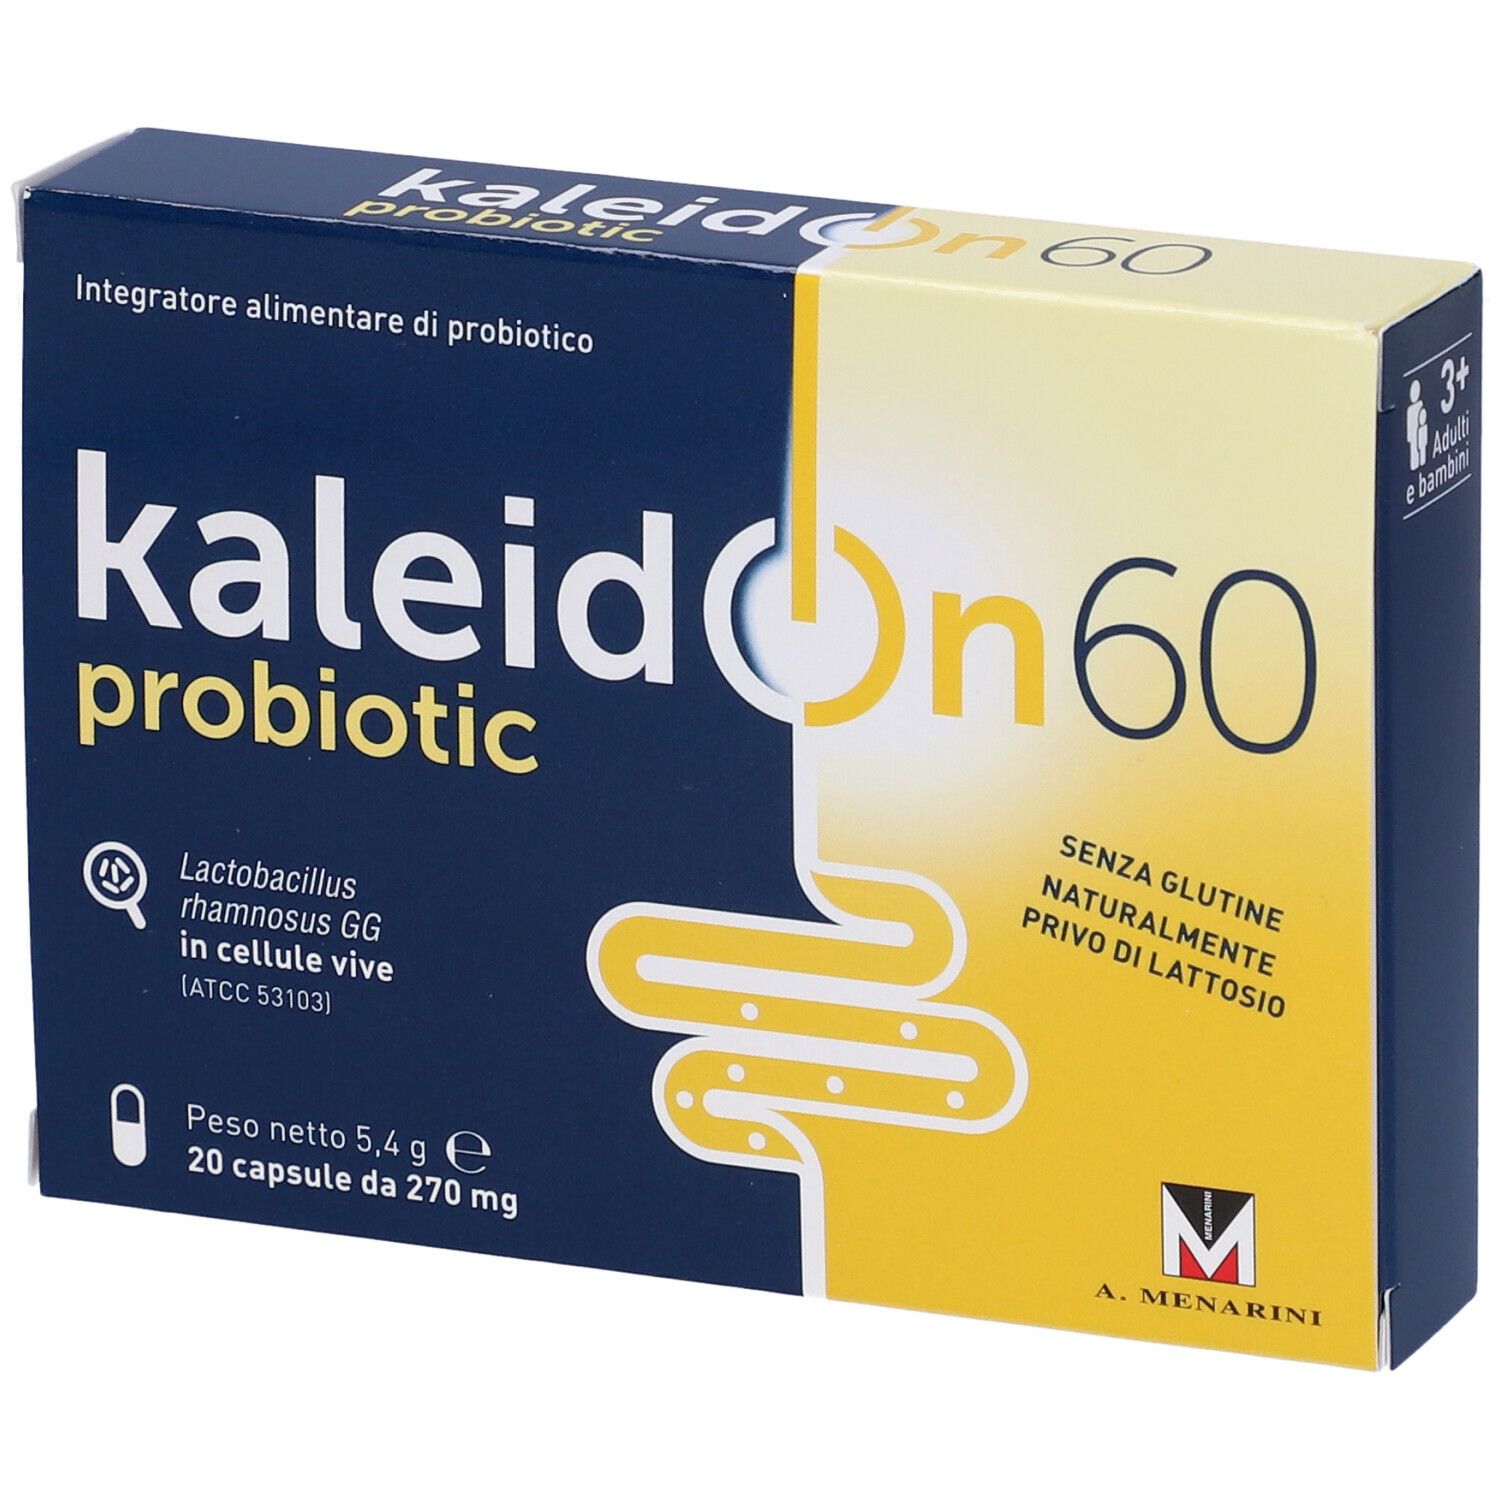 Kaleidon 60 Probiotic Capsule